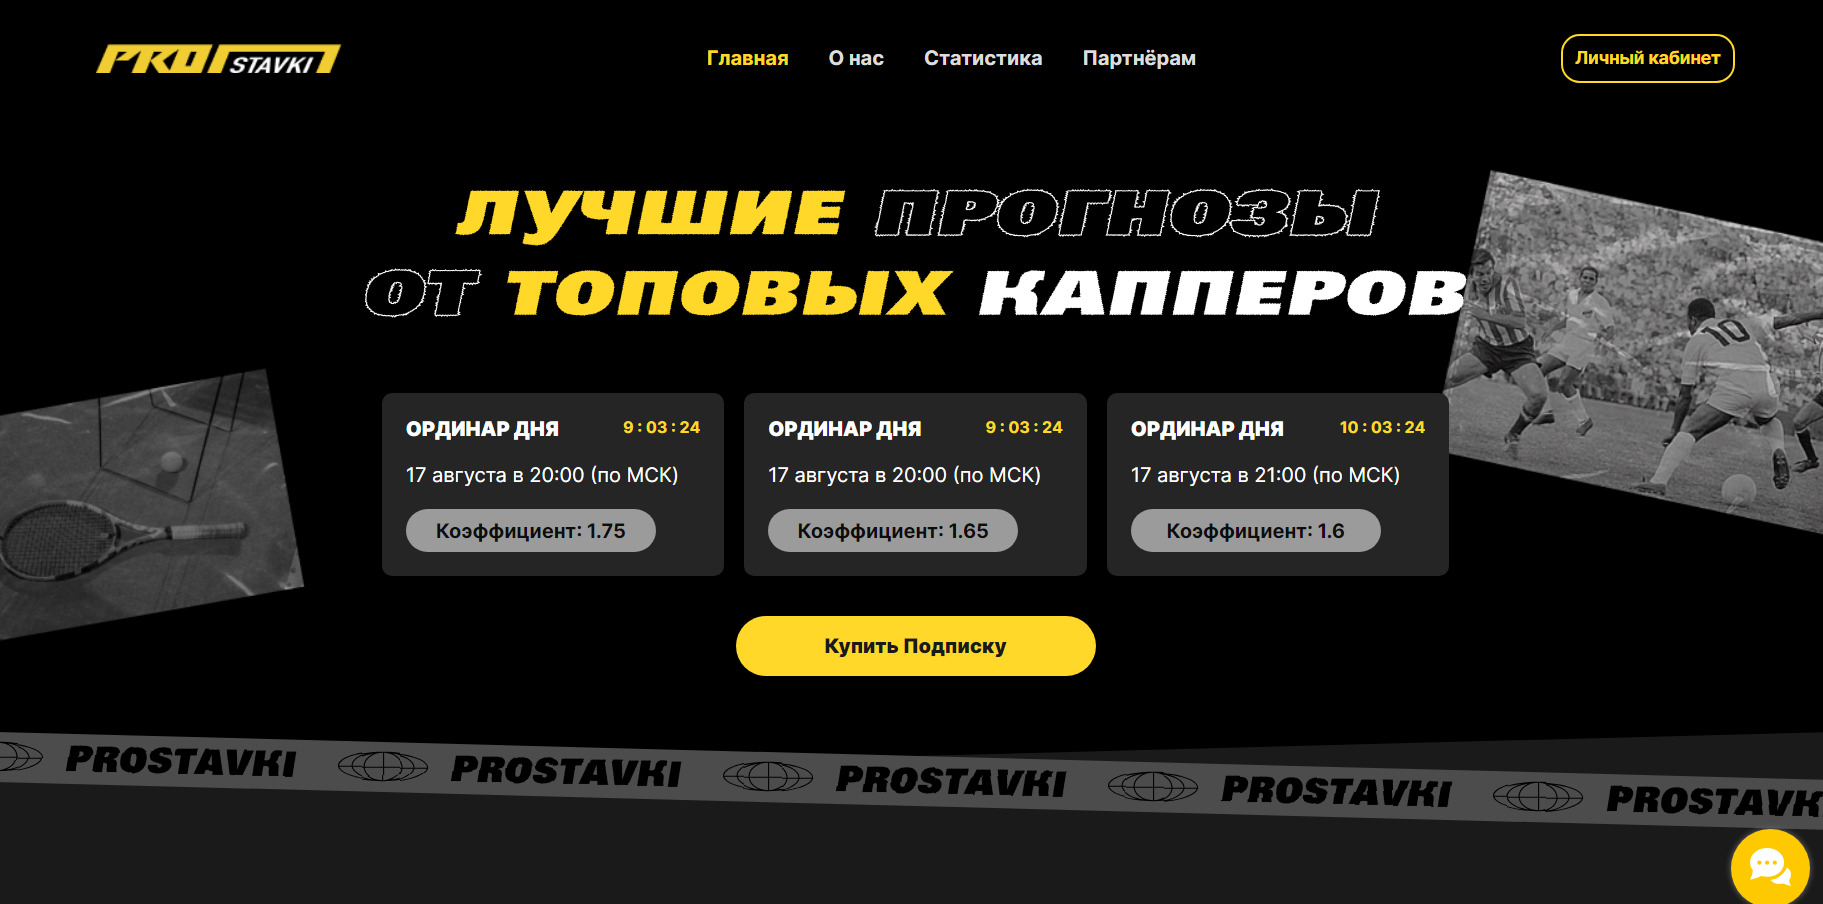 Сайт с прогнозами на спорт ProStavki Pro